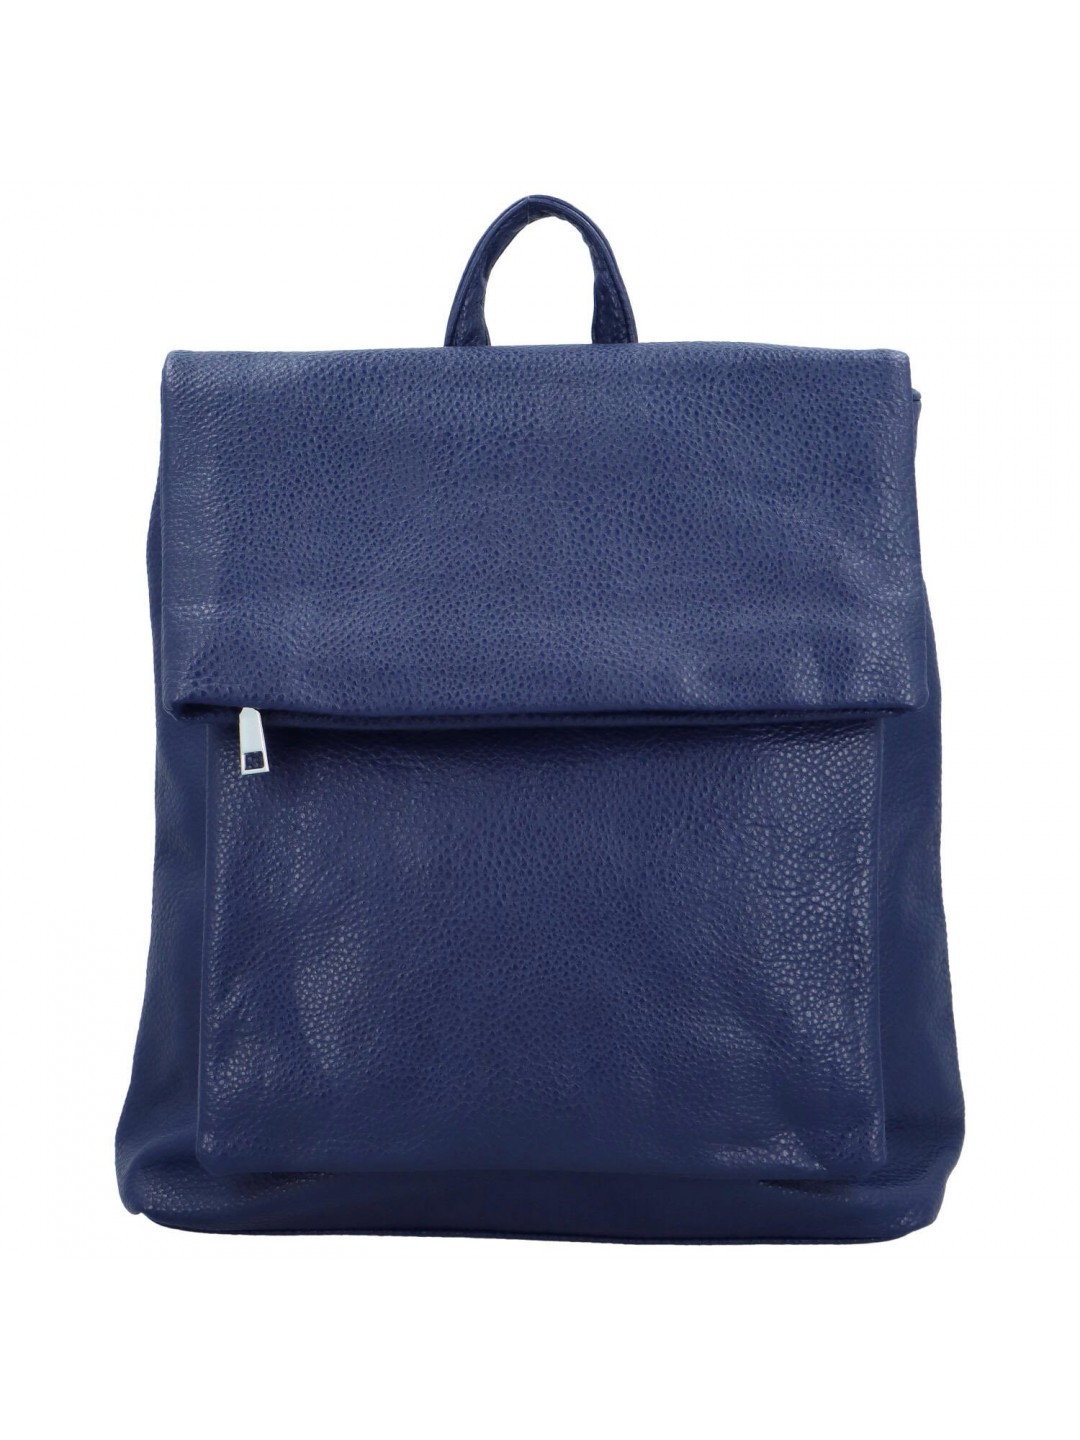 Dámský kabelko batoh tmavě modrý – Firenze Noland